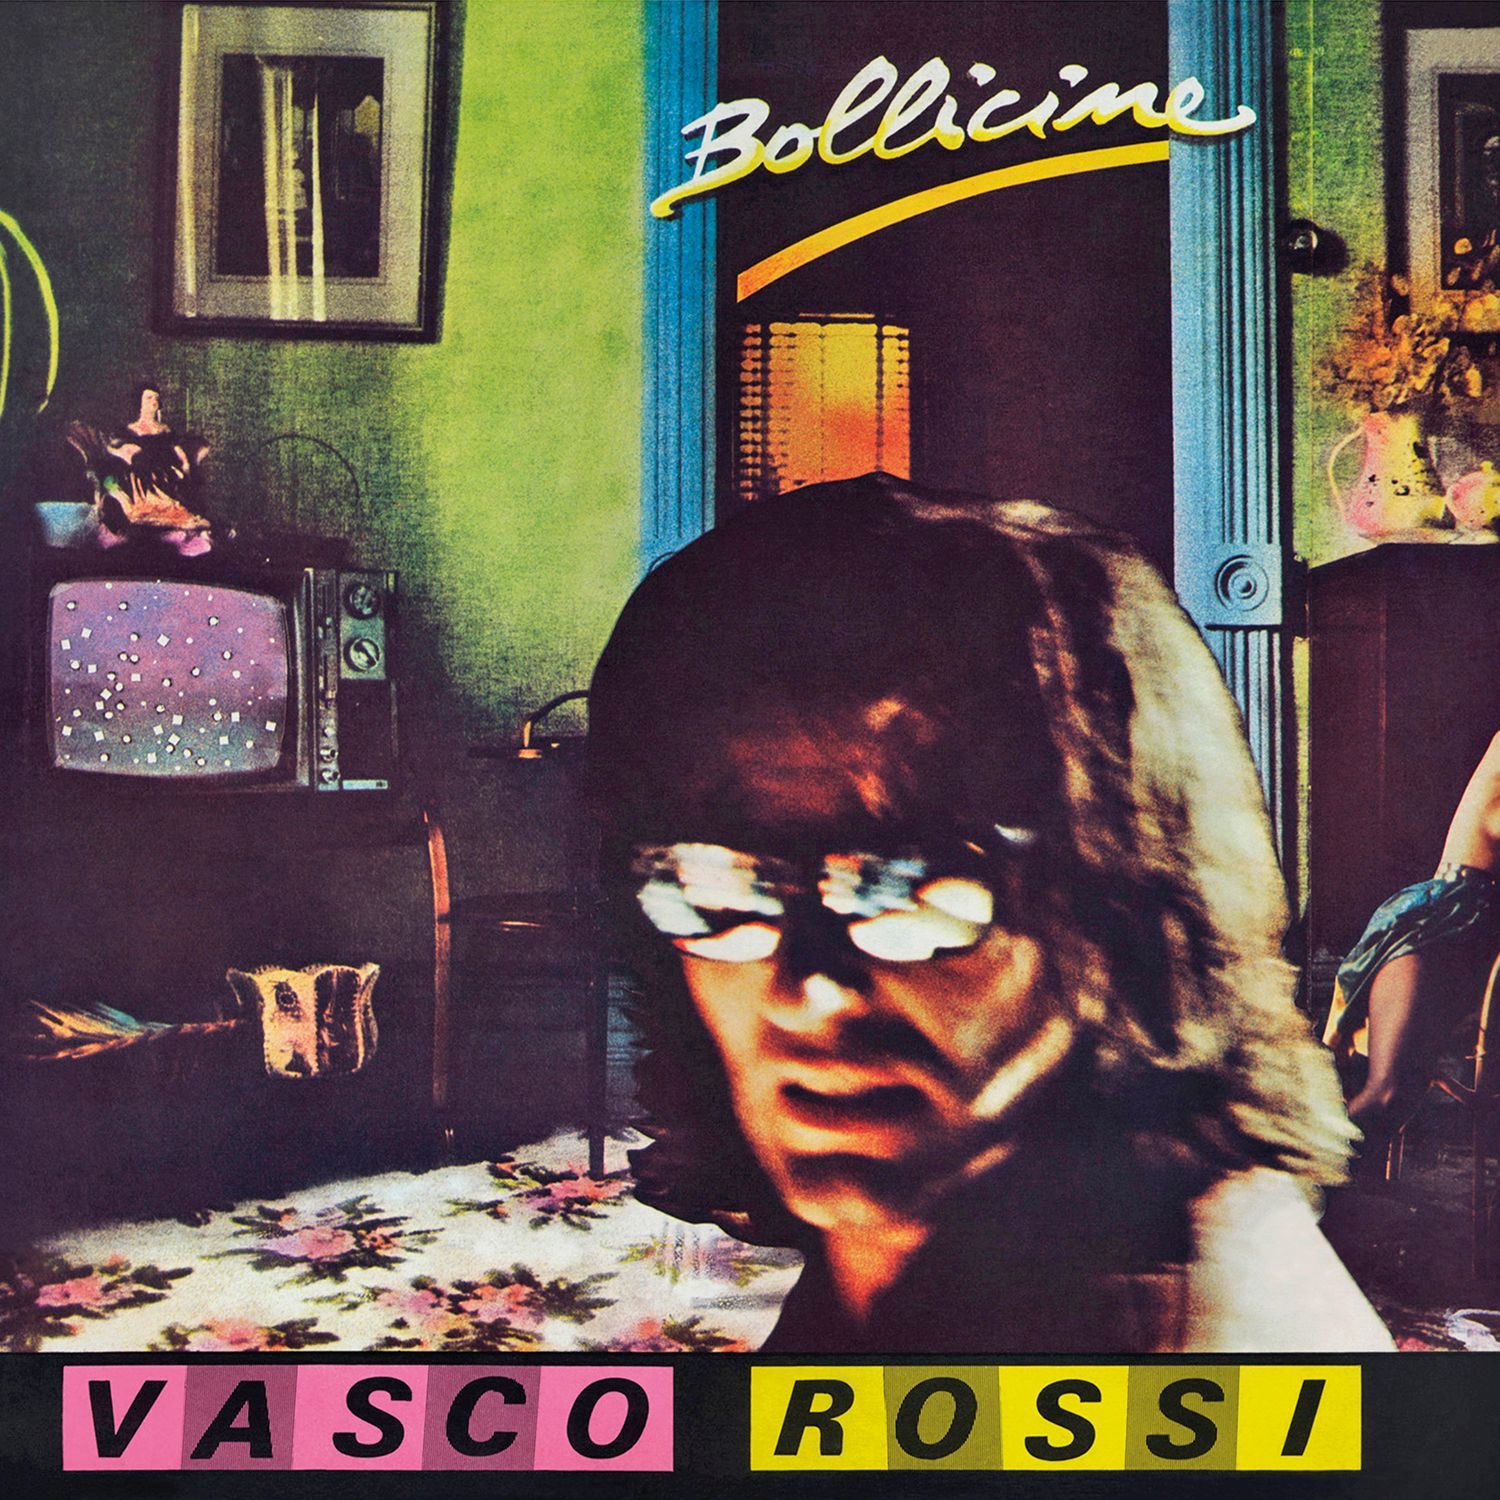 Vinile Vasco Rossi - Bollicine 40 Rplay (Lp In Bauletto Con Busta Interna Personalizzata) NUOVO SIGILLATO, EDIZIONE DEL 15/12/2023 SUBITO DISPONIBILE